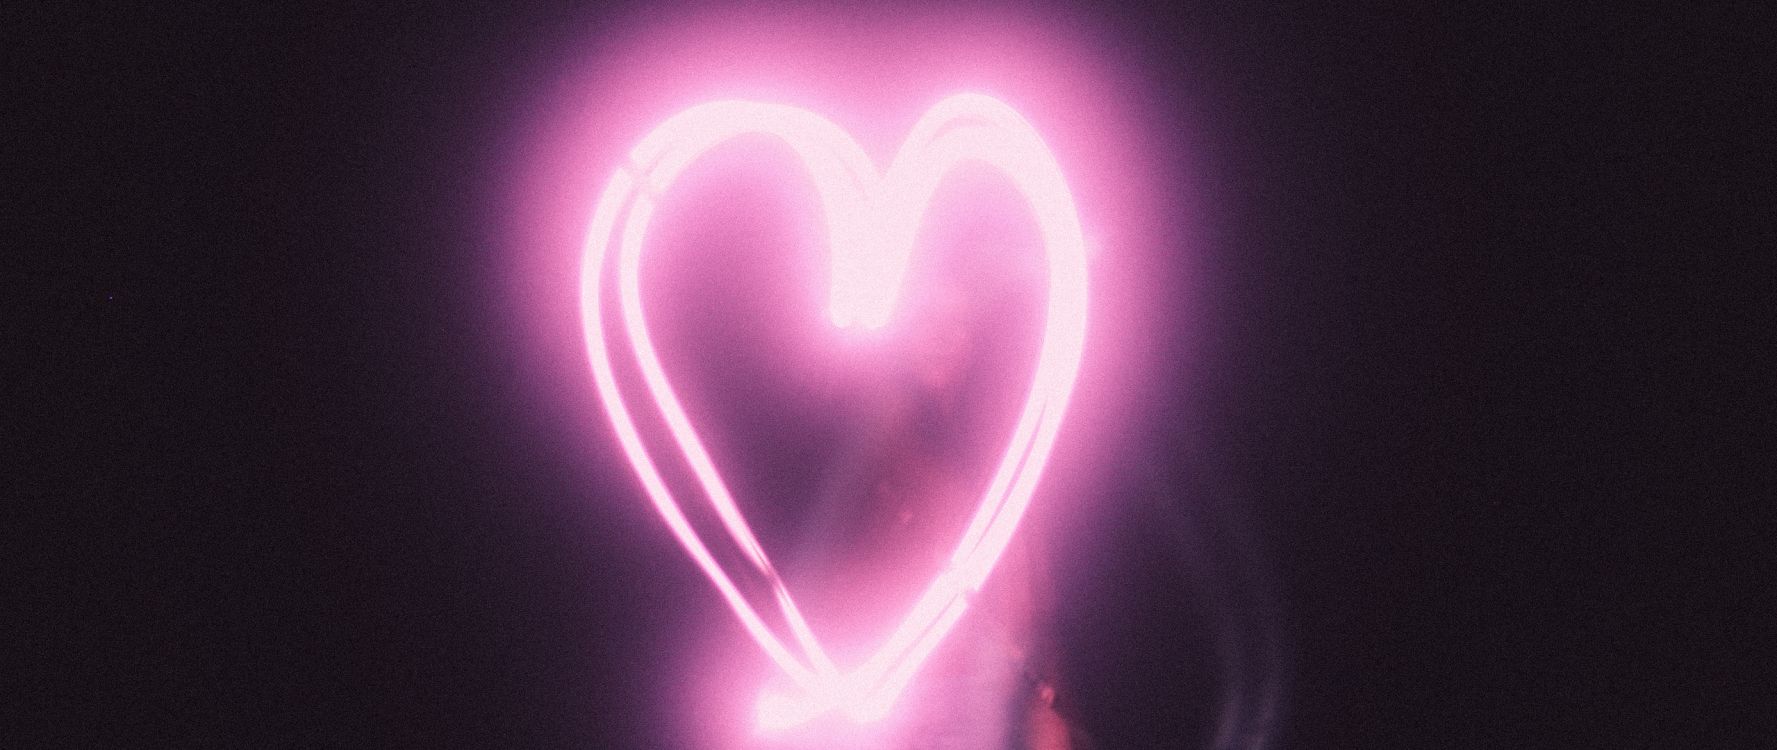 Lumière, Pink, Cœur, Amour, Néon. Wallpaper in 2560x1080 Resolution